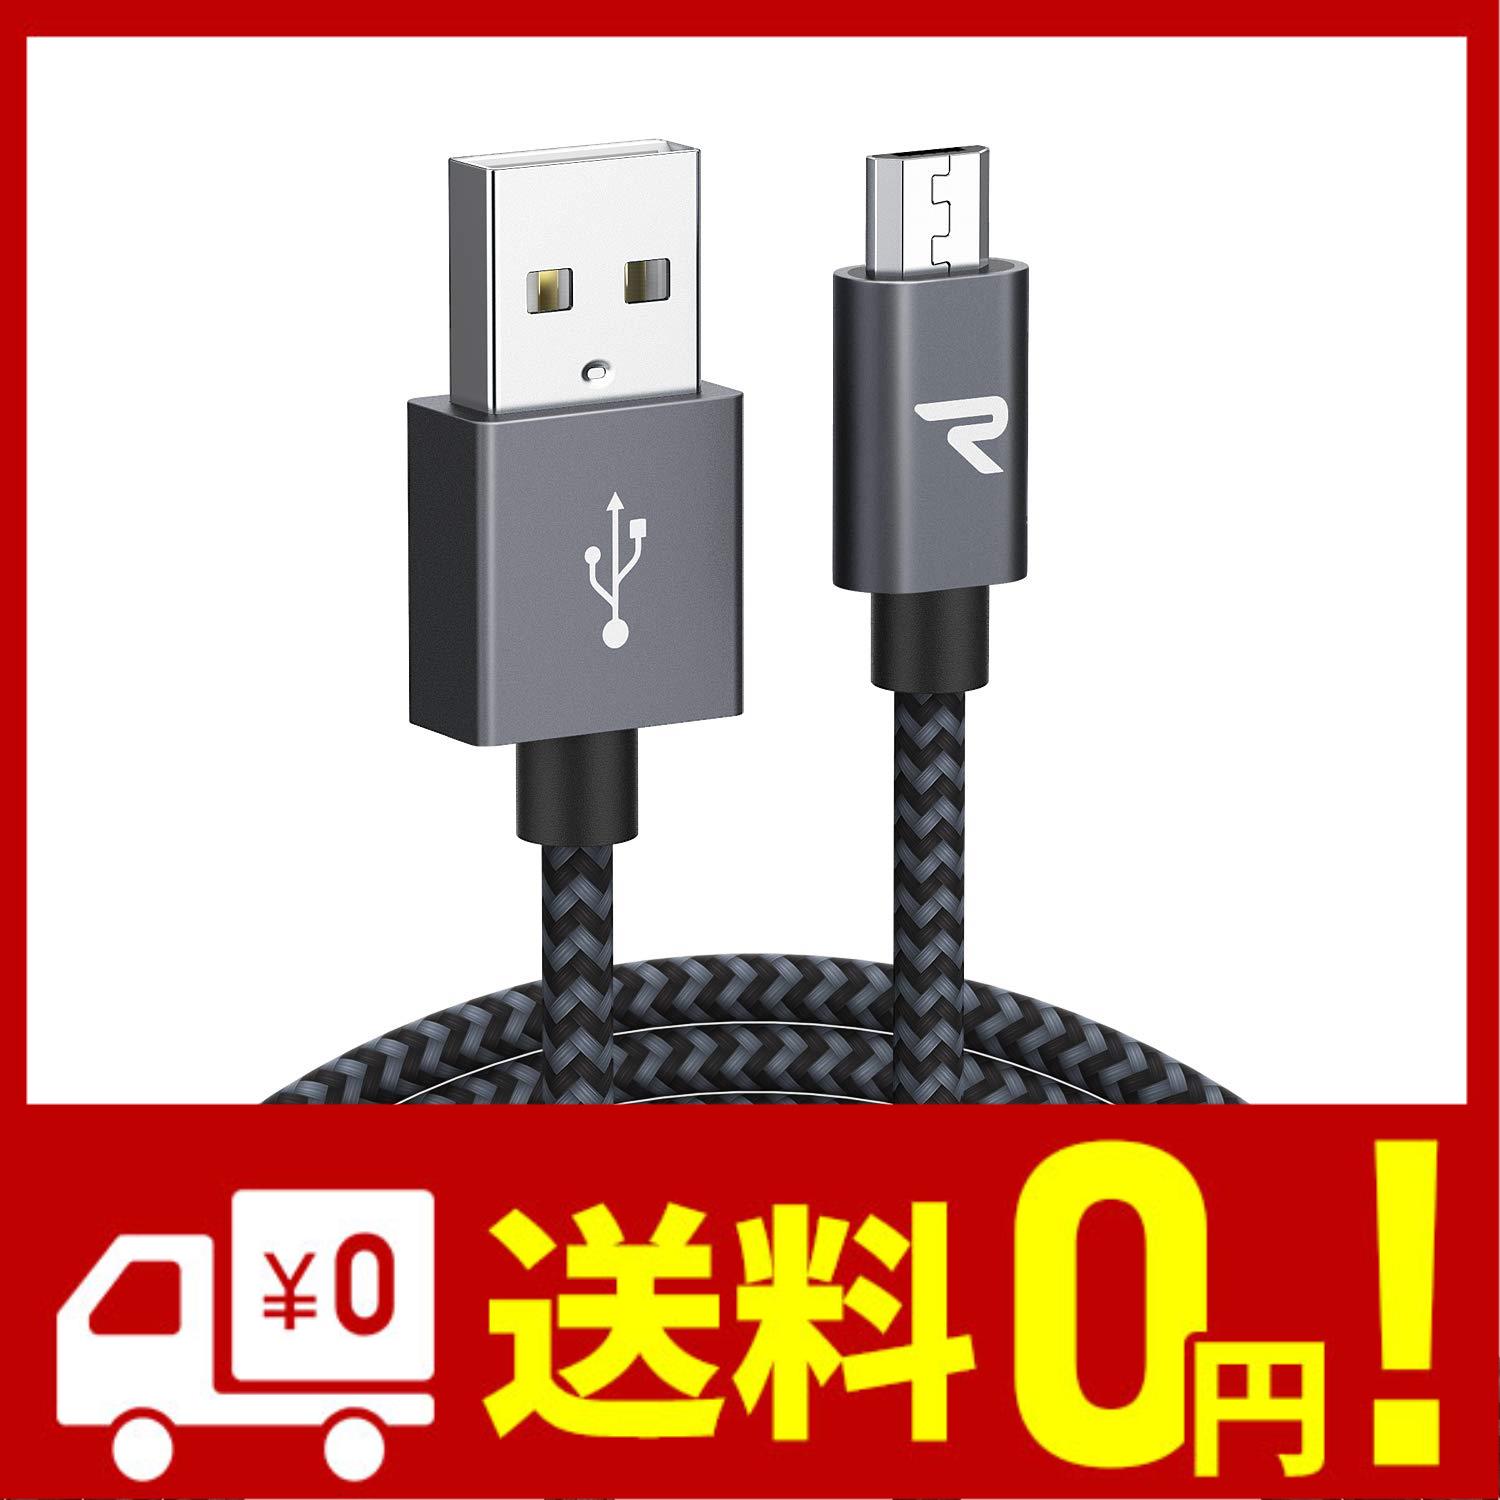 Rampow Micro USB ケーブル 3M 黒 2.4A急速充電ケーブル 高速データ転送対応 高耐久編組ナイロンケーブル Sharp Aquos Sony Xperia Fuji